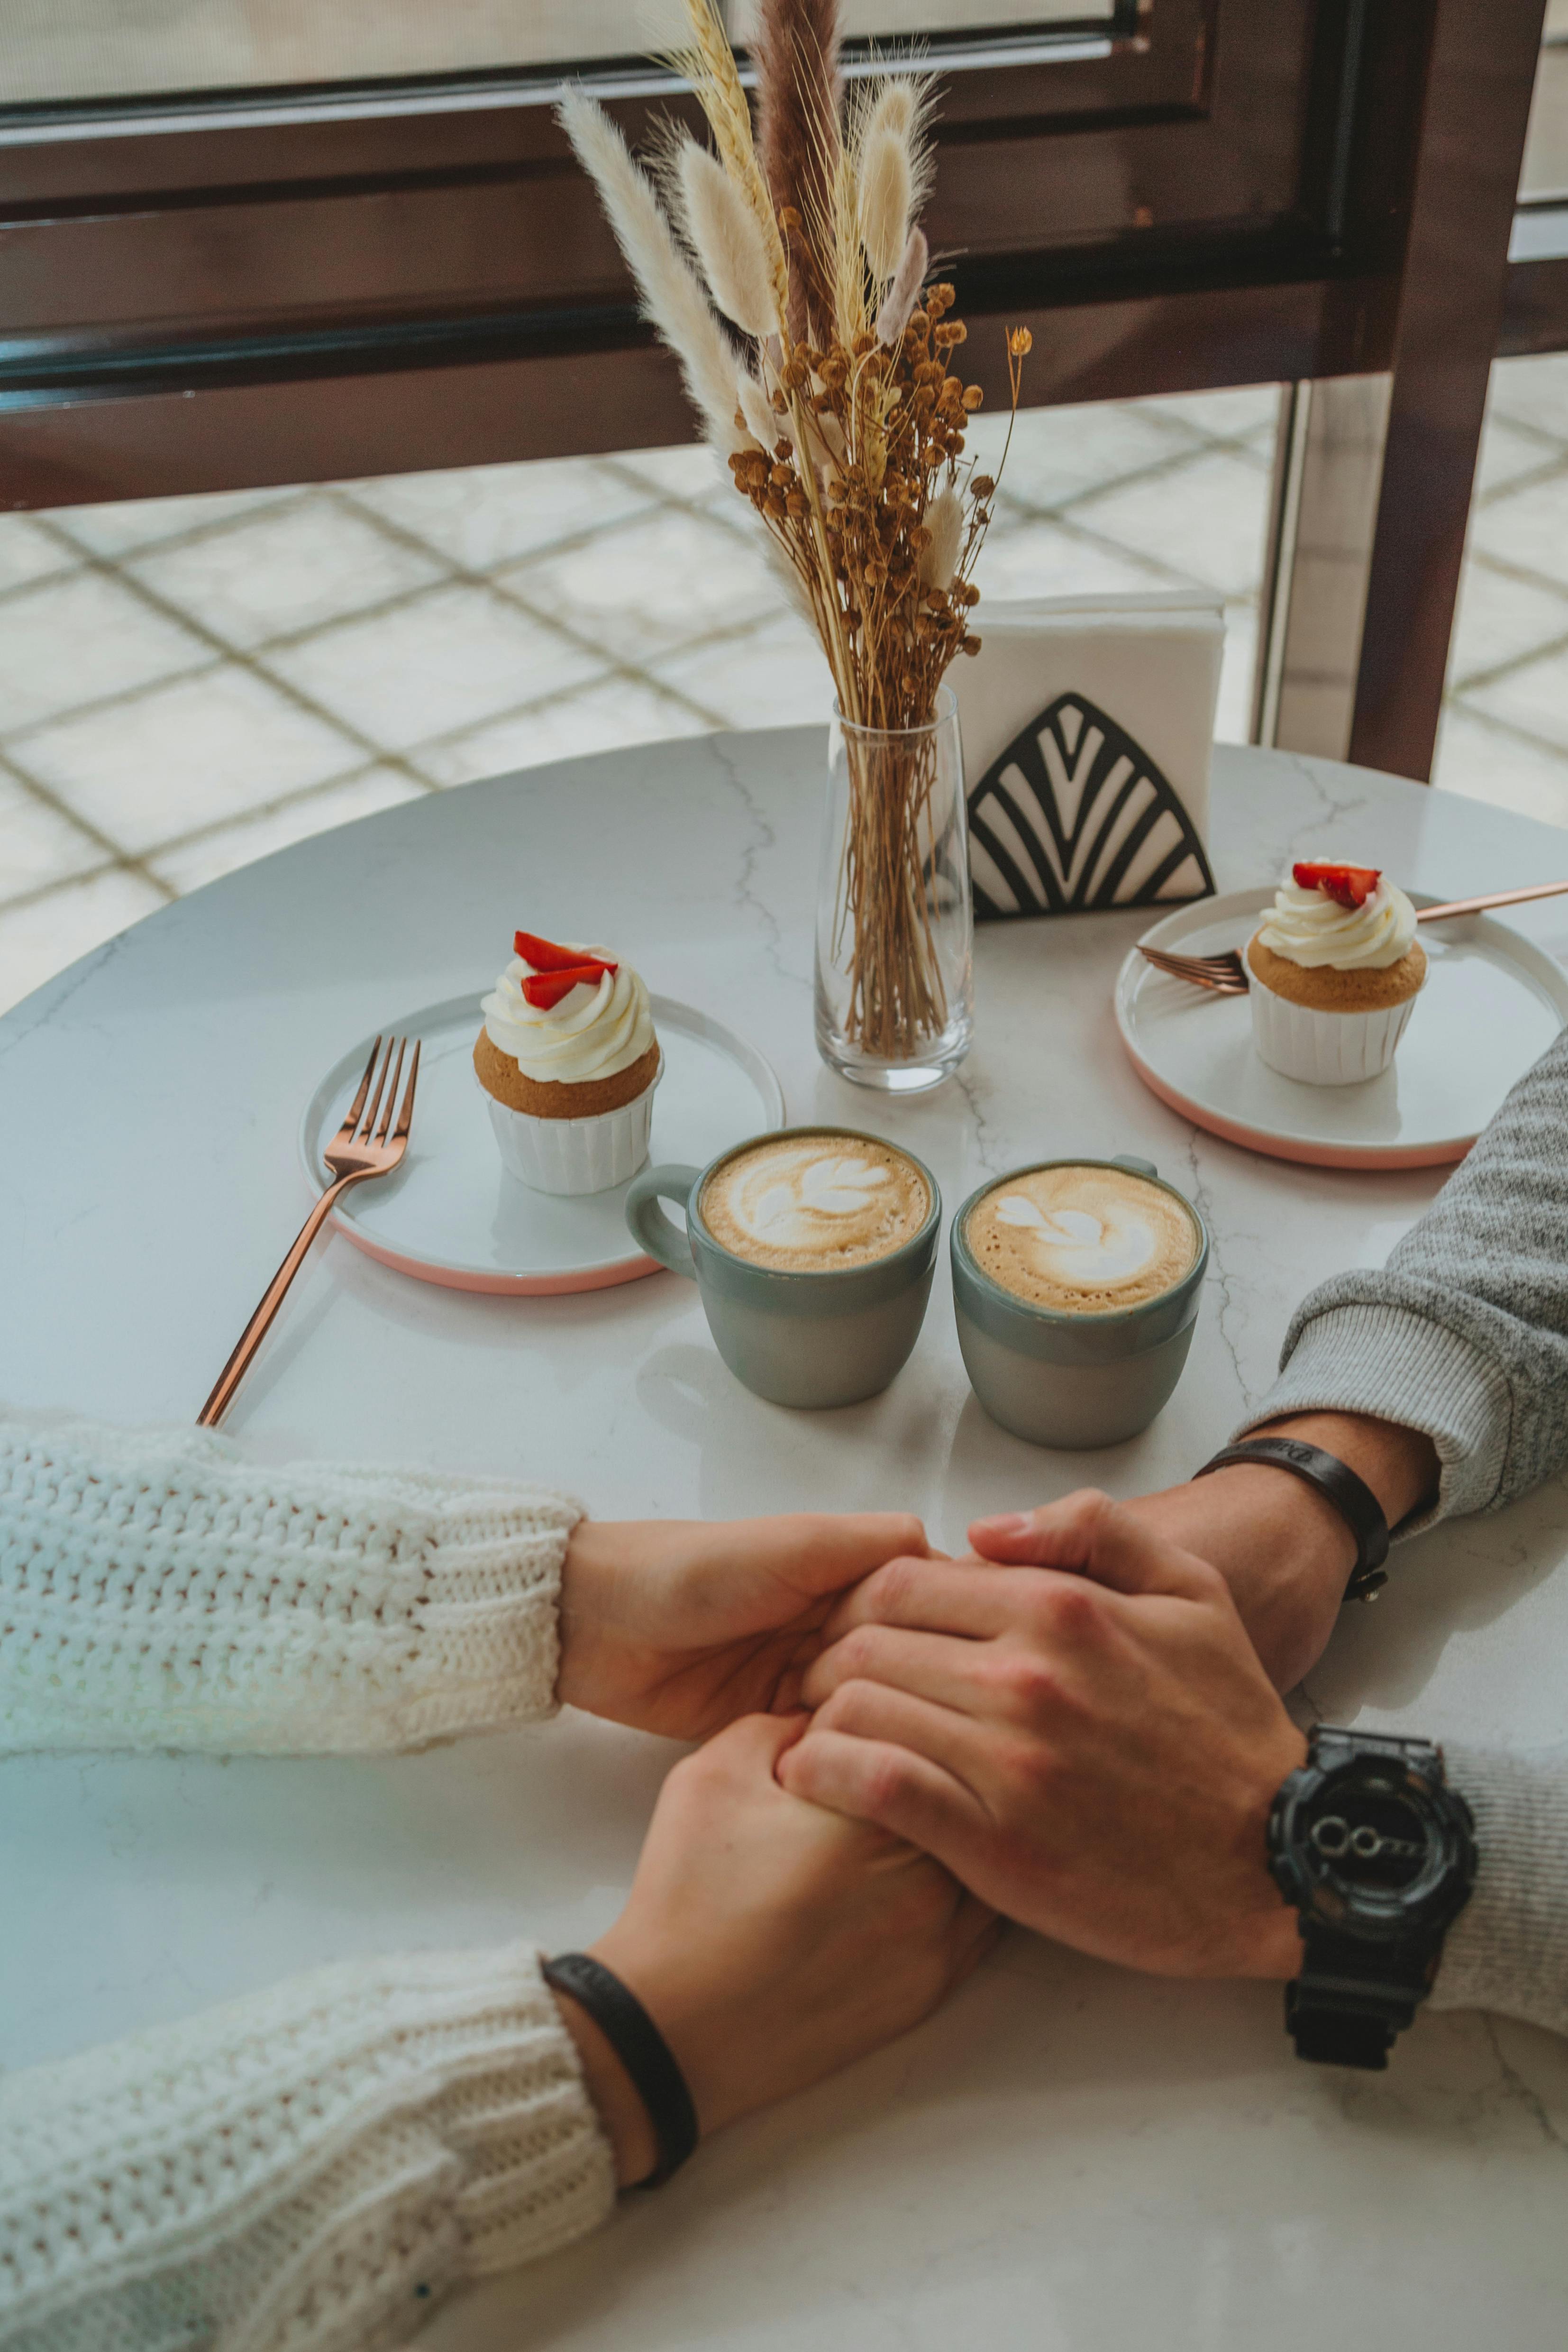 Ein Paar hält sich an den Händen, während es Nachtisch und Kaffee genießt | Quelle: Pexels